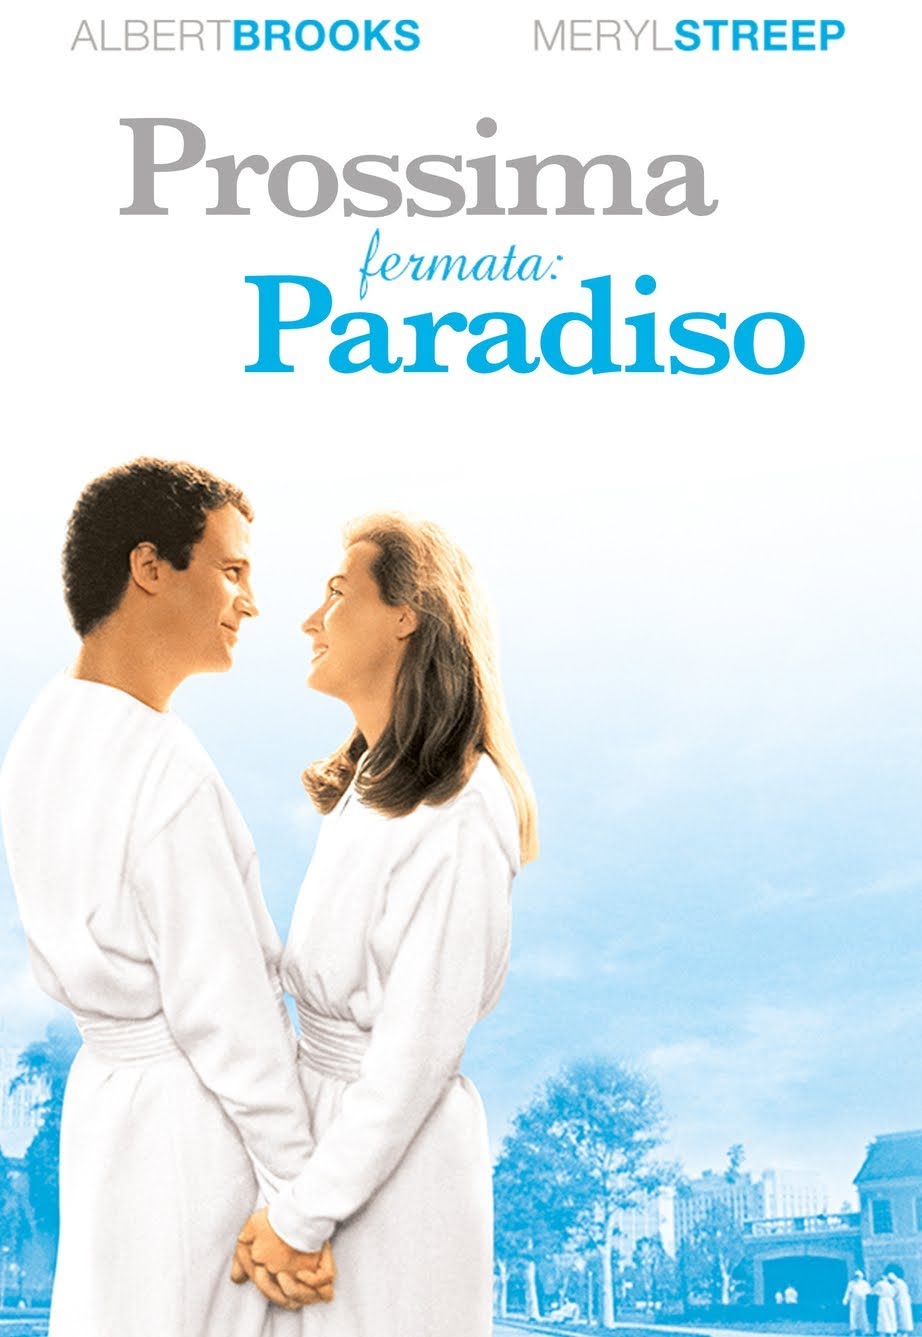 Prossima fermata: Paradiso [HD] (1991)